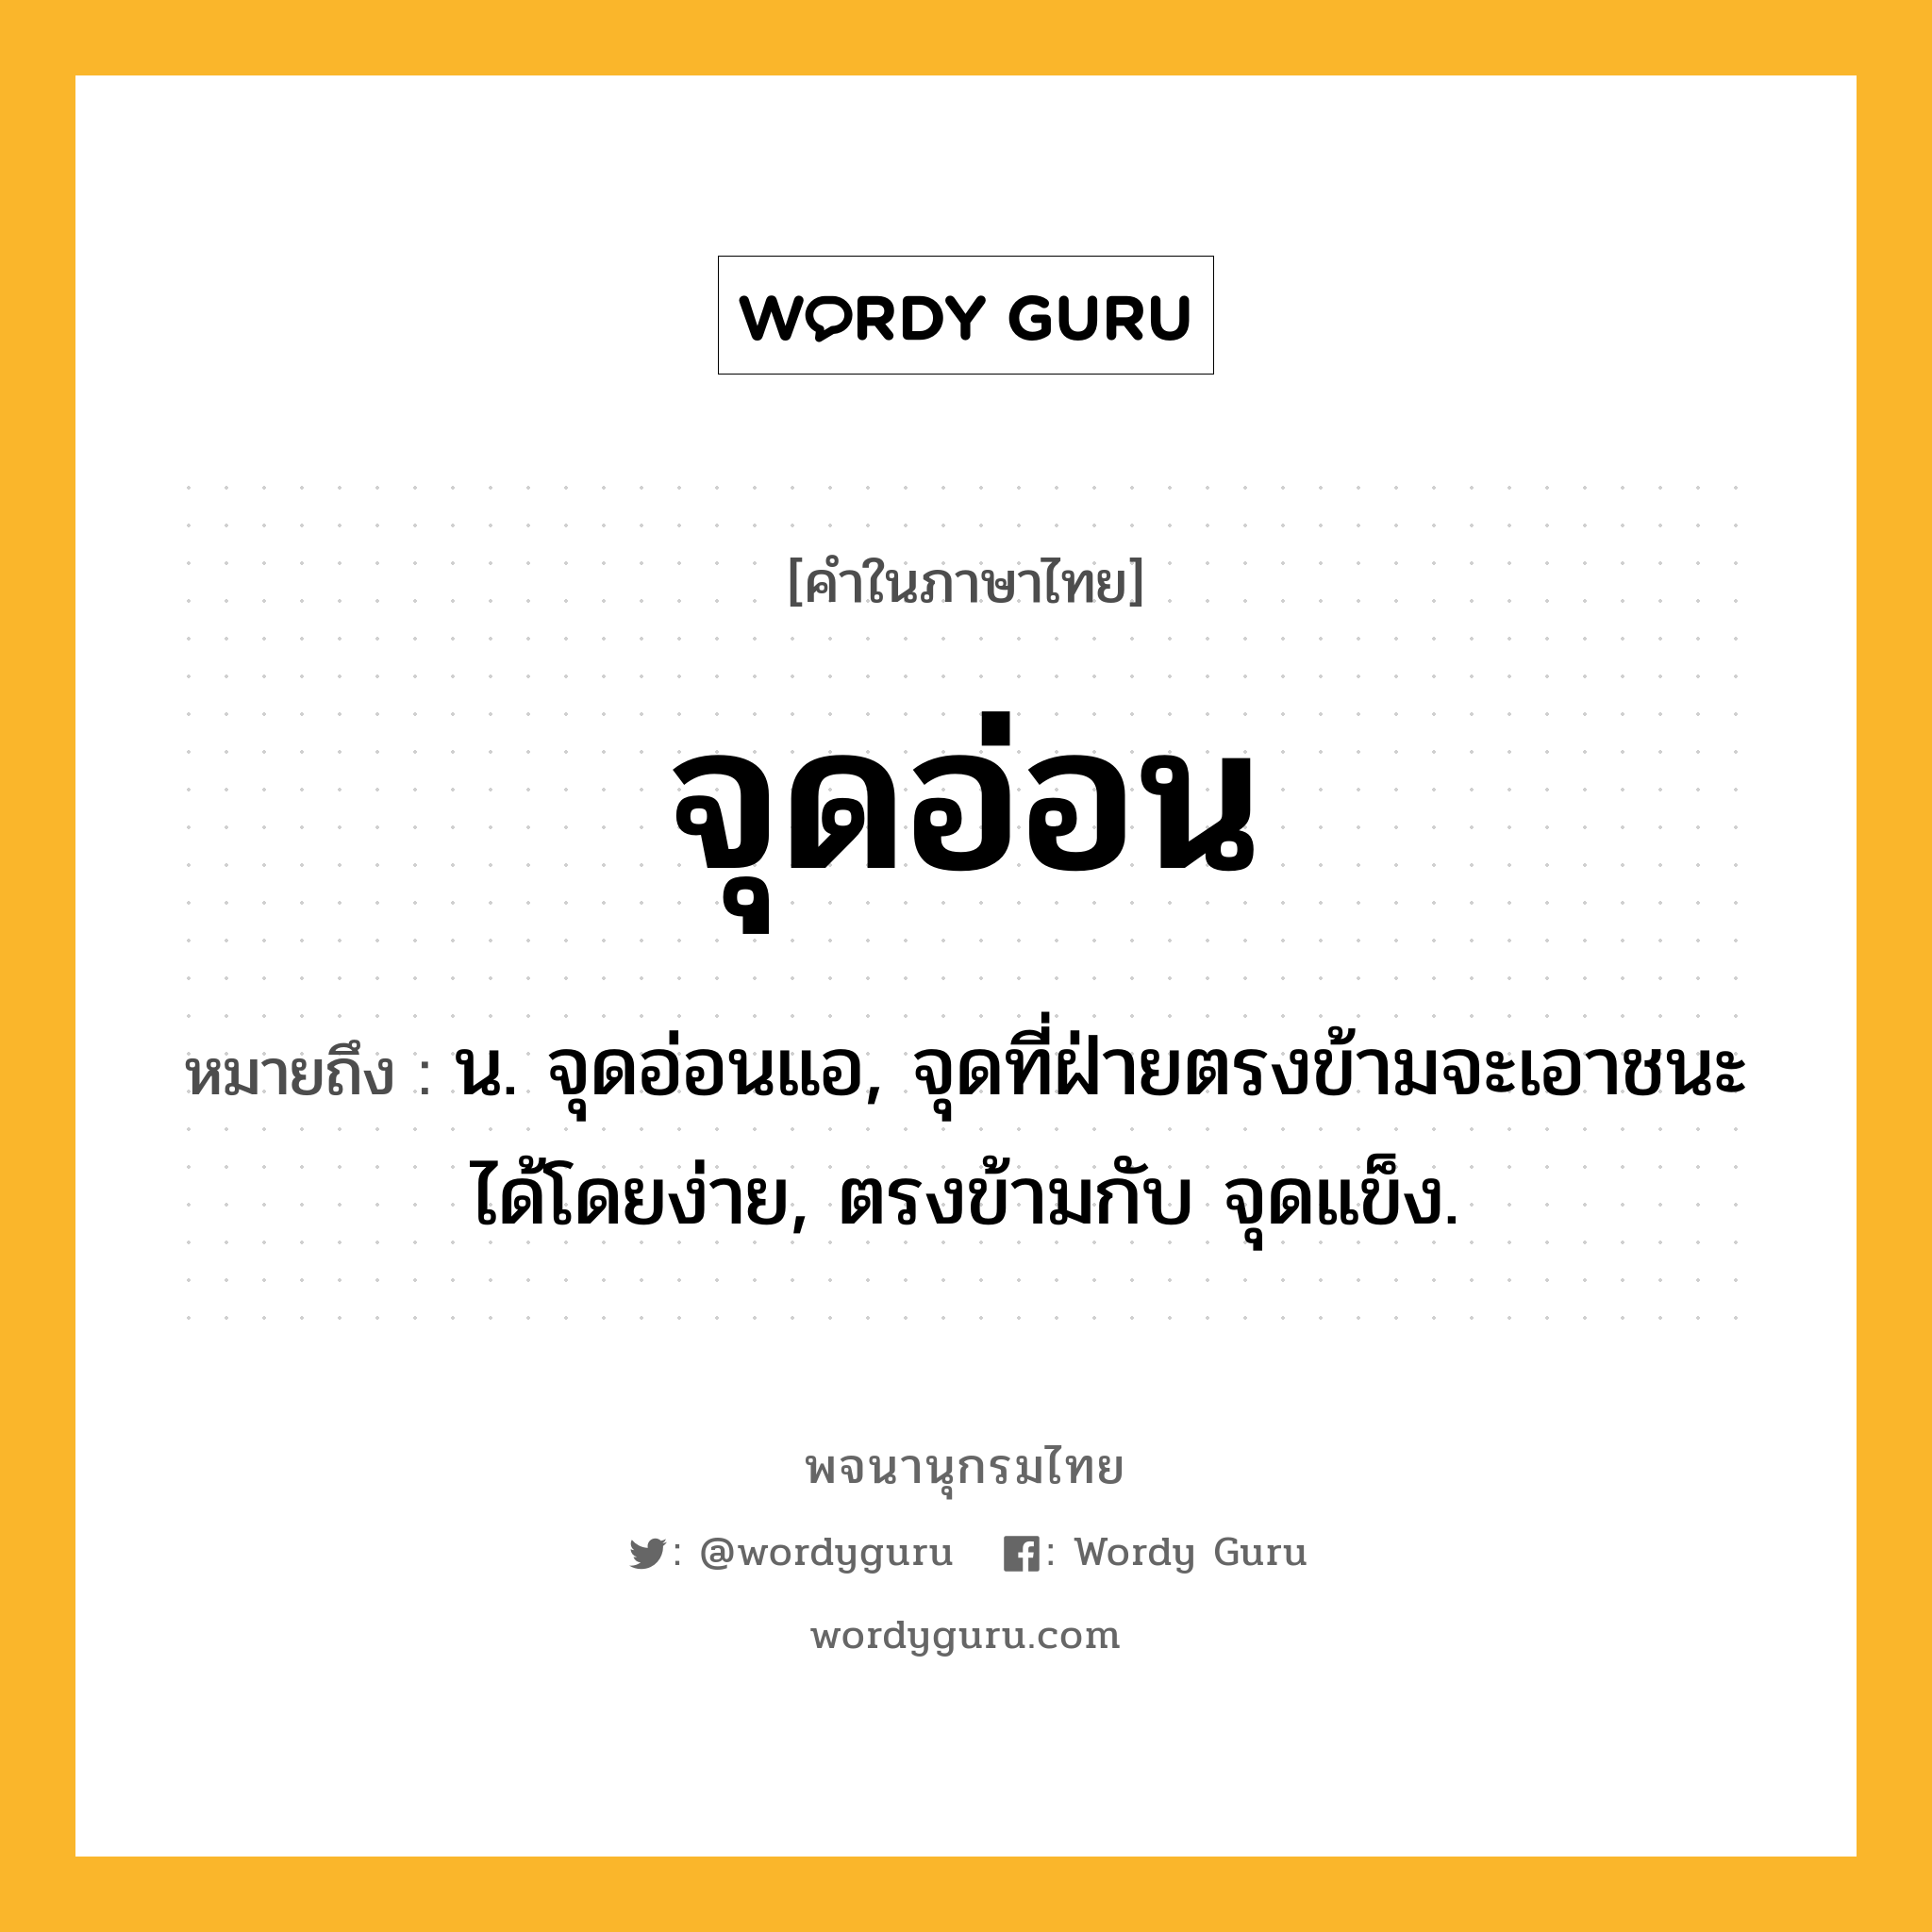 จุดอ่อน หมายถึงอะไร?, คำในภาษาไทย จุดอ่อน หมายถึง น. จุดอ่อนแอ, จุดที่ฝ่ายตรงข้ามจะเอาชนะได้โดยง่าย, ตรงข้ามกับ จุดแข็ง.